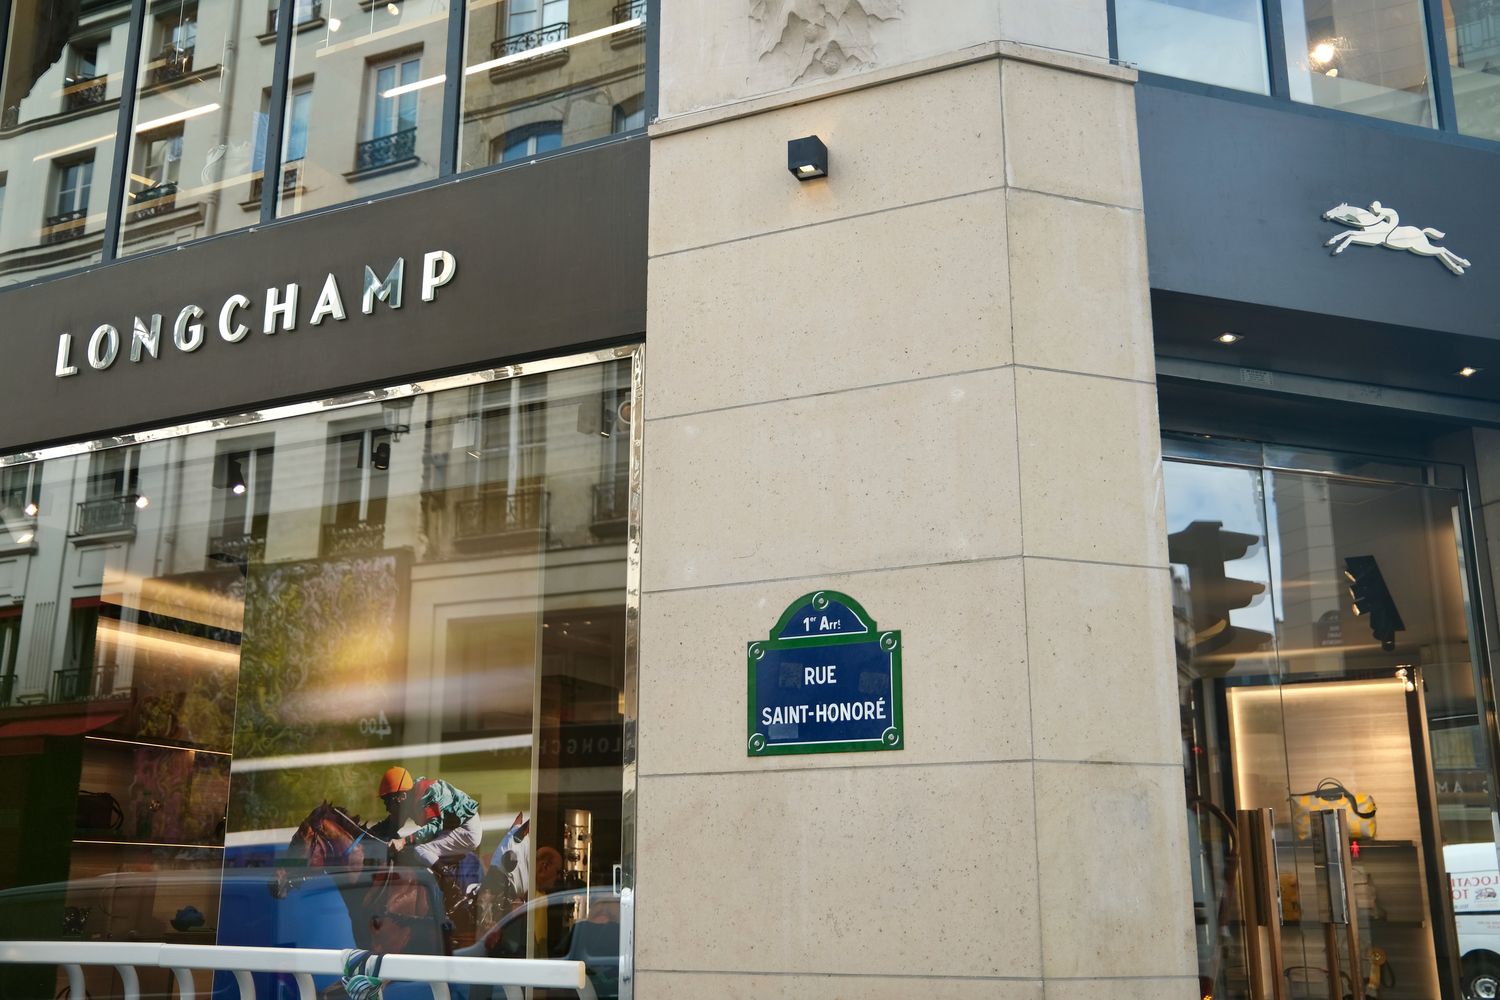 Longchamp Rue Saint-Honore Paris_DSCF3356